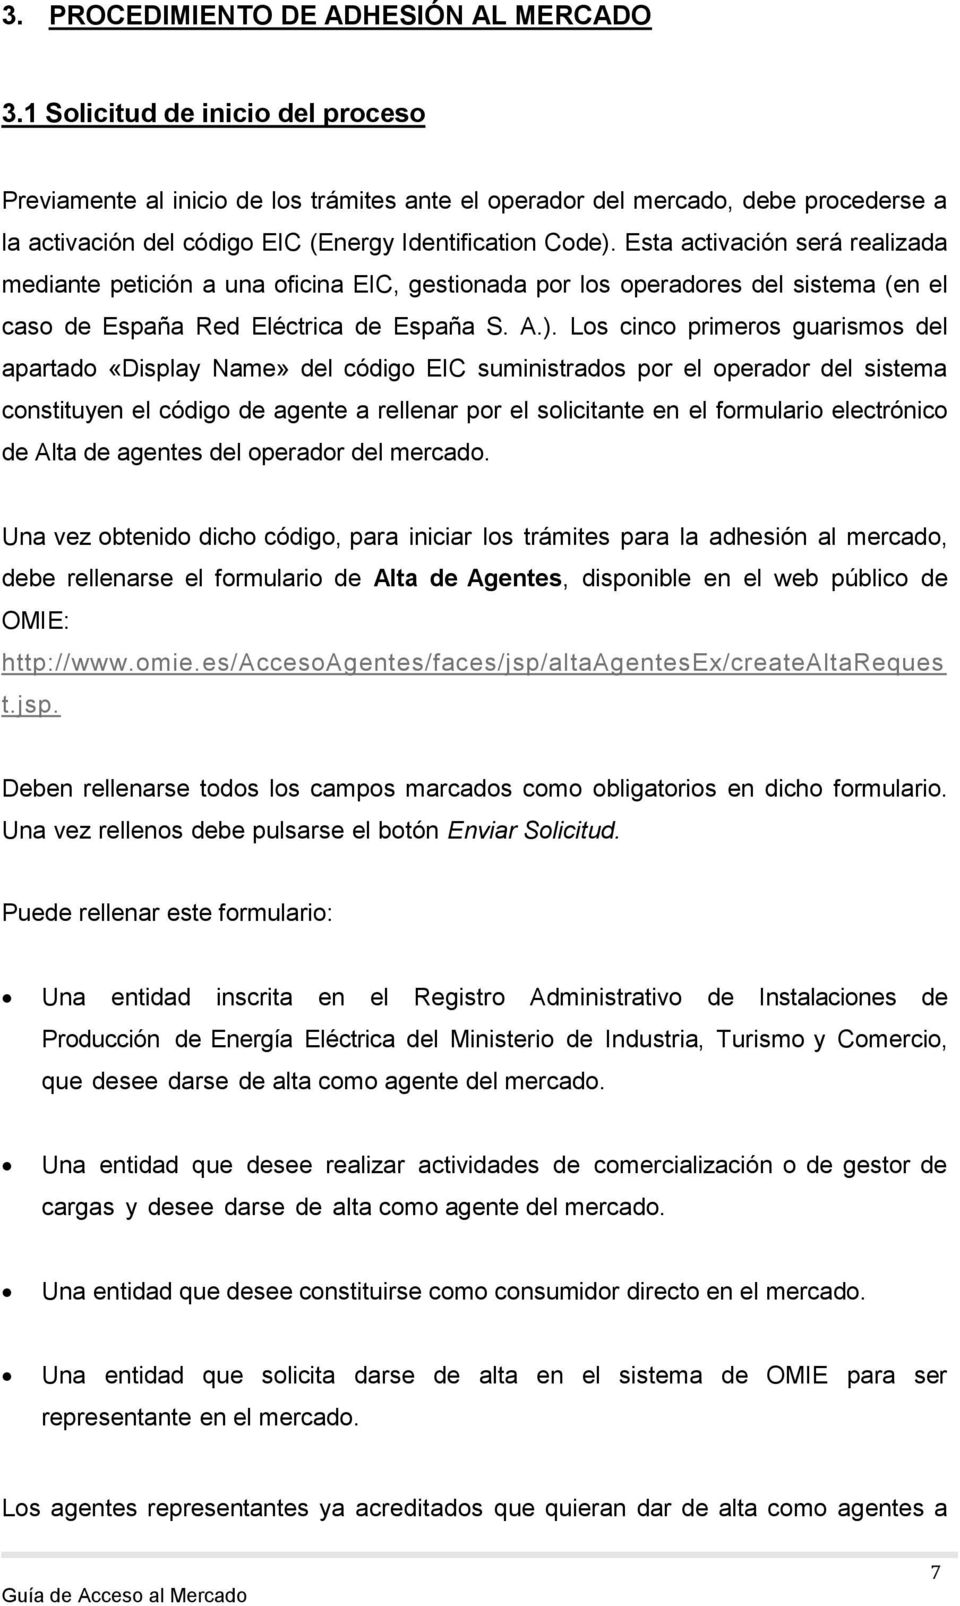 Esta activación será realizada mediante petición a una oficina EIC, gestionada por los operadores del sistema (en el caso de España Red Eléctrica de España S. A.).